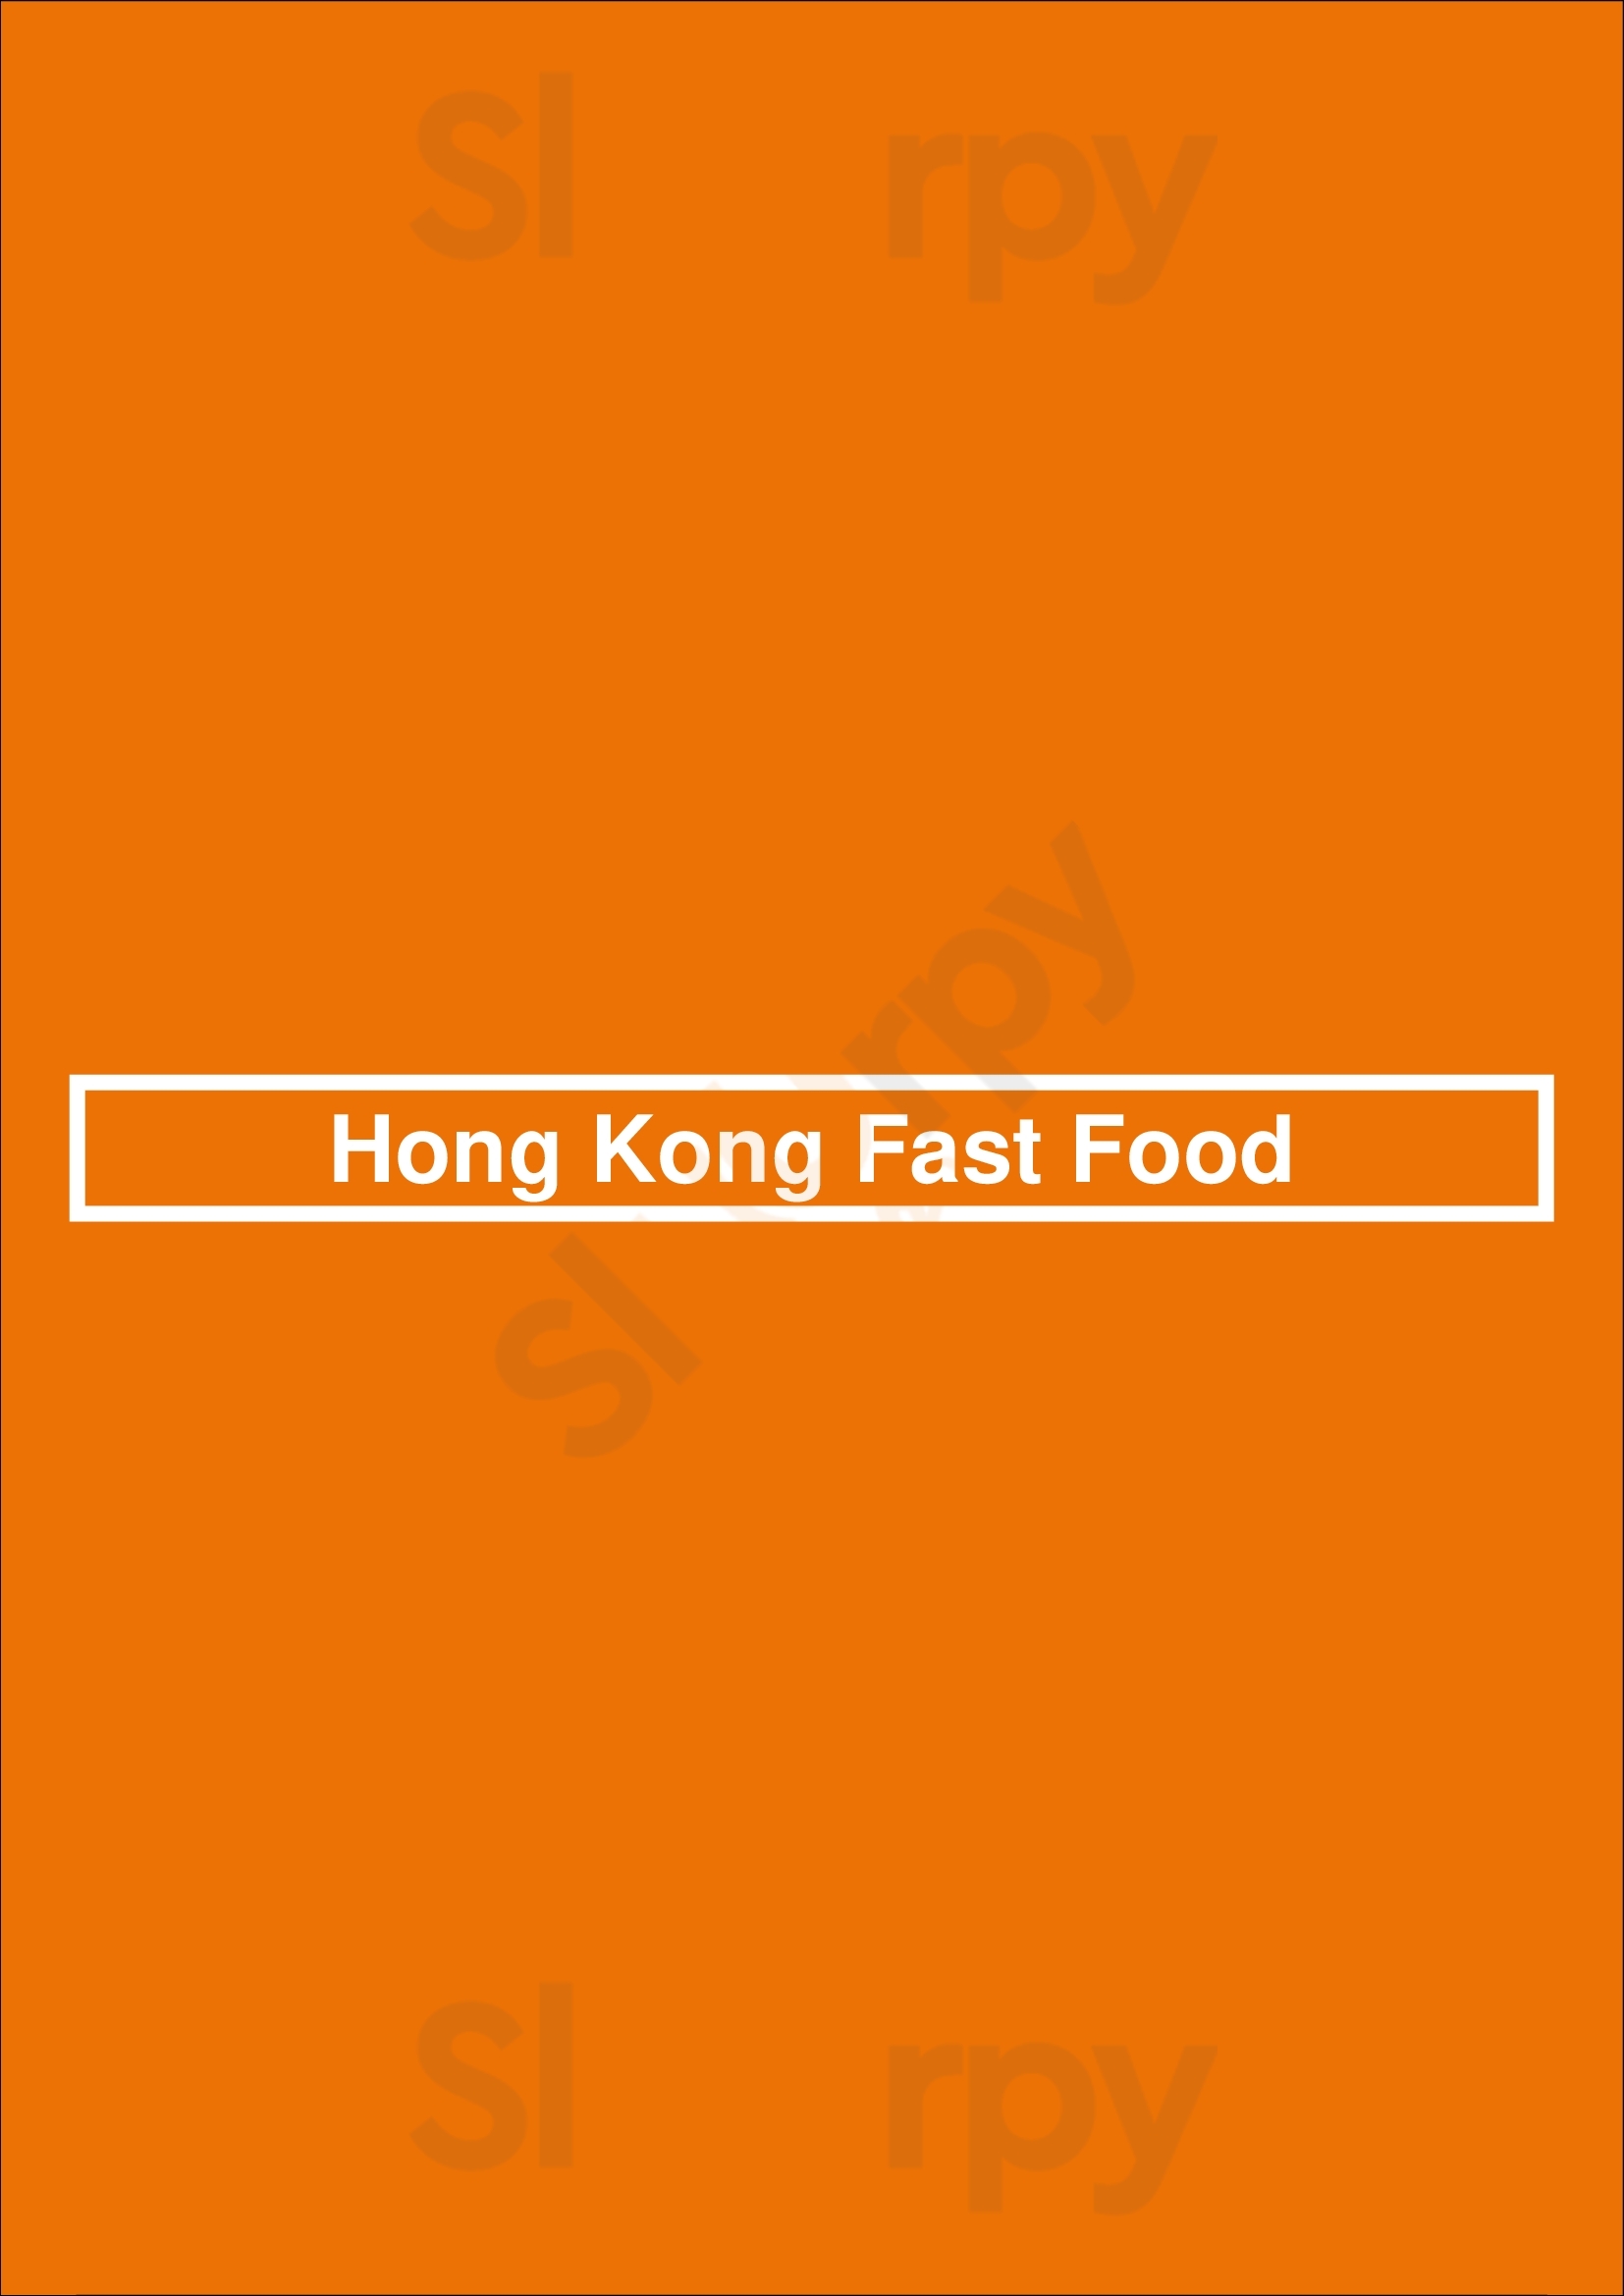 Hong Kong Fast Food Oakland Menu - 1